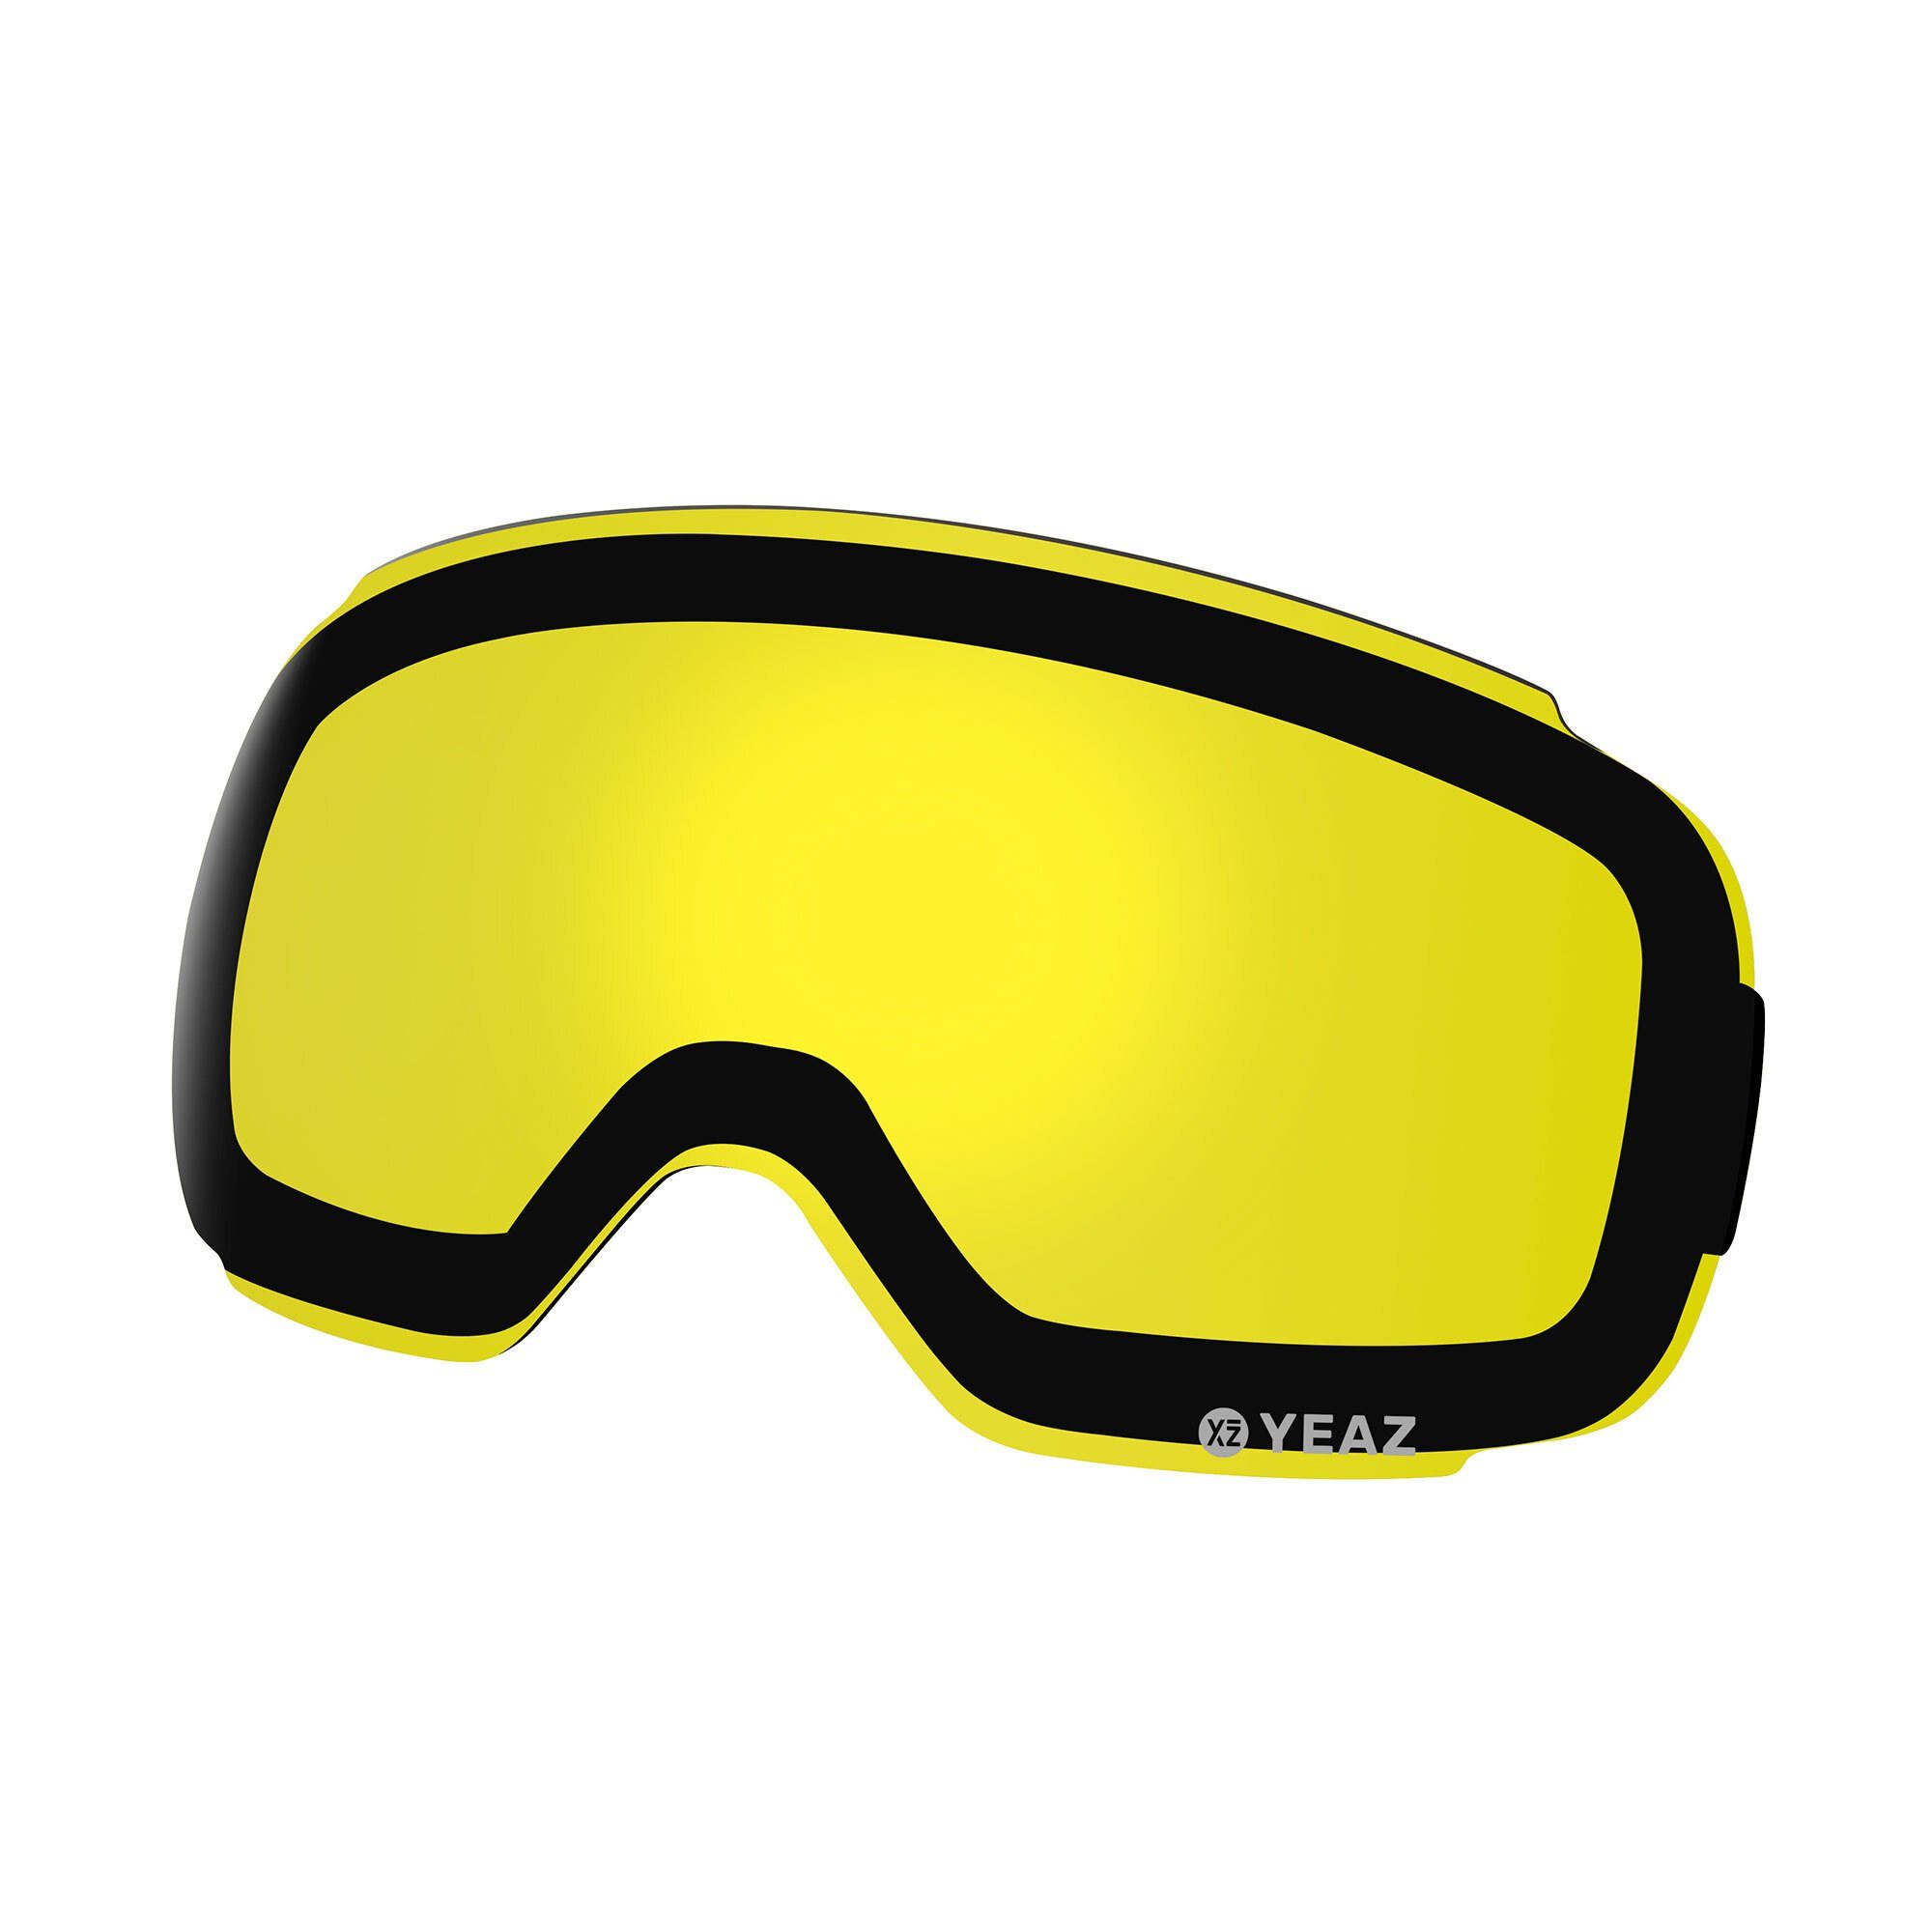 Skibrille ski- TWEAK-X für TWEAK-X Magnetisches wechselglas Wechselglas YEAZ für Skibrille snowboardbrille,